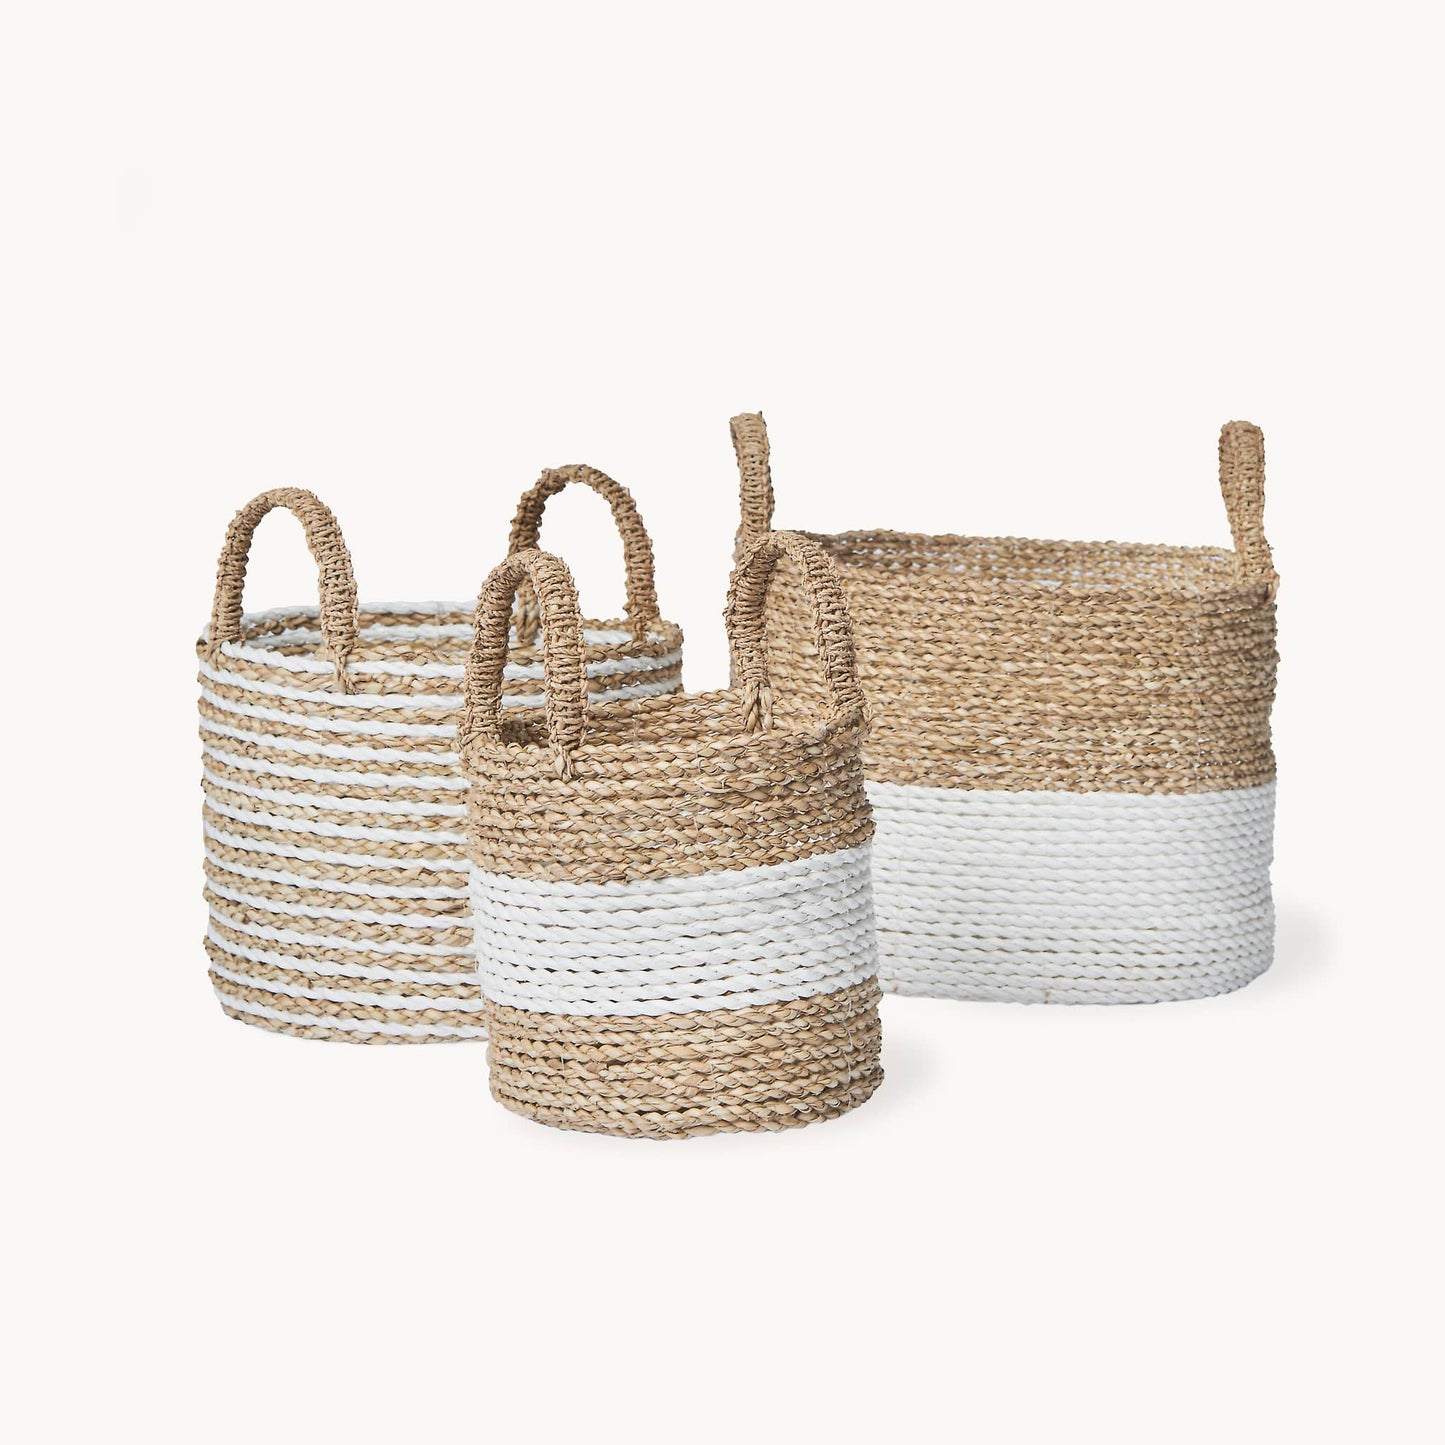 Handled Basket by POKOLOKO